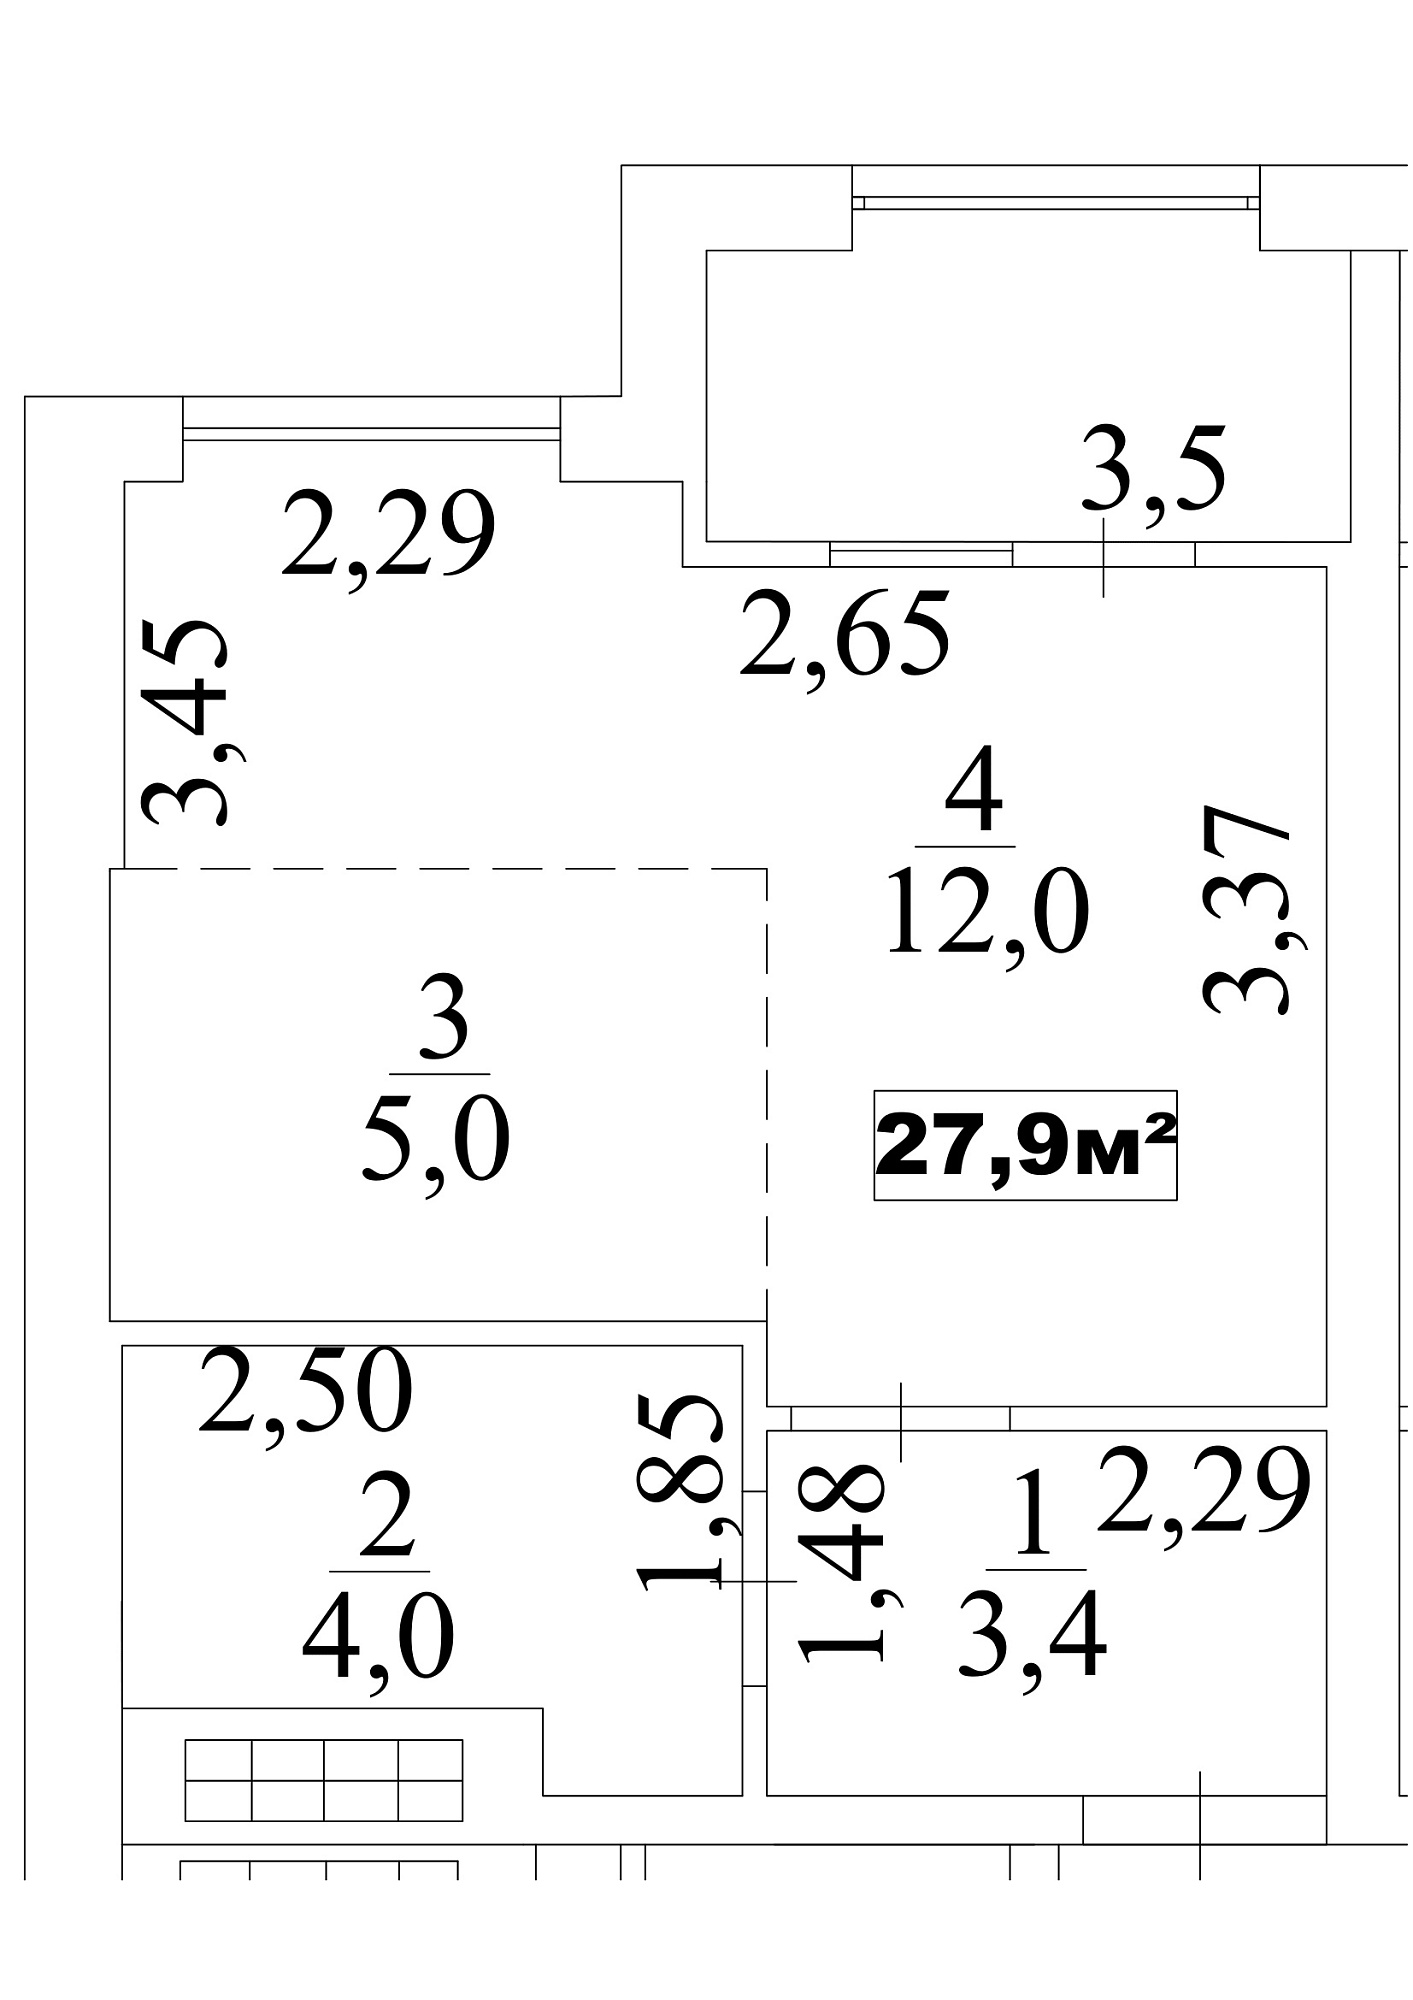 Планування Smart-квартира площею 27.9м2, AB-10-07/0057б.